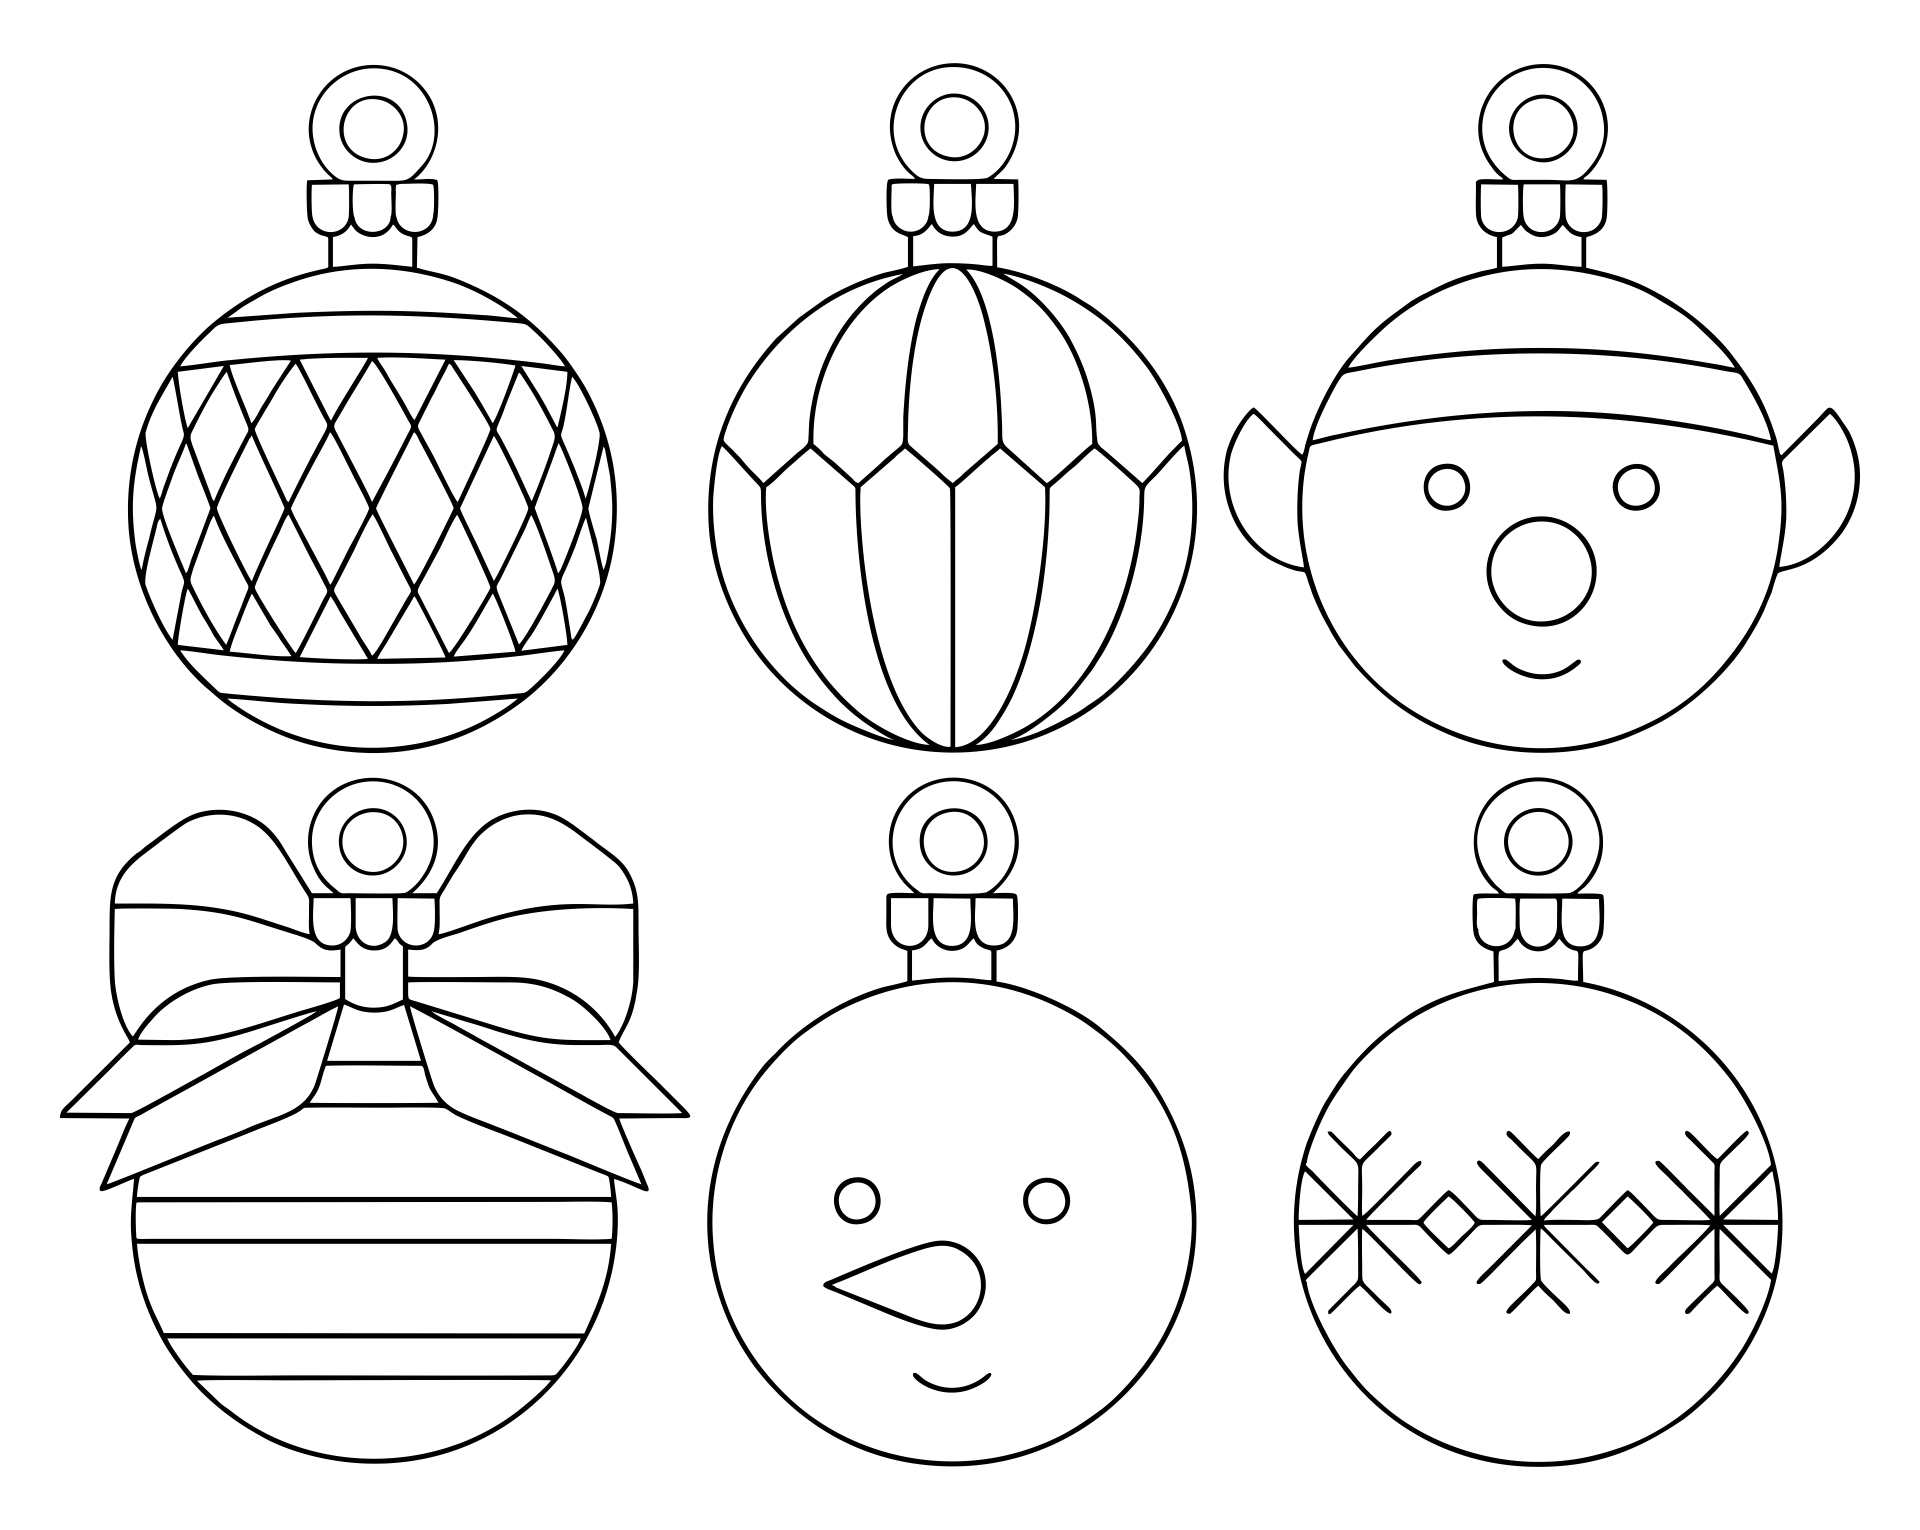 Printable Christmas Ornament Templates